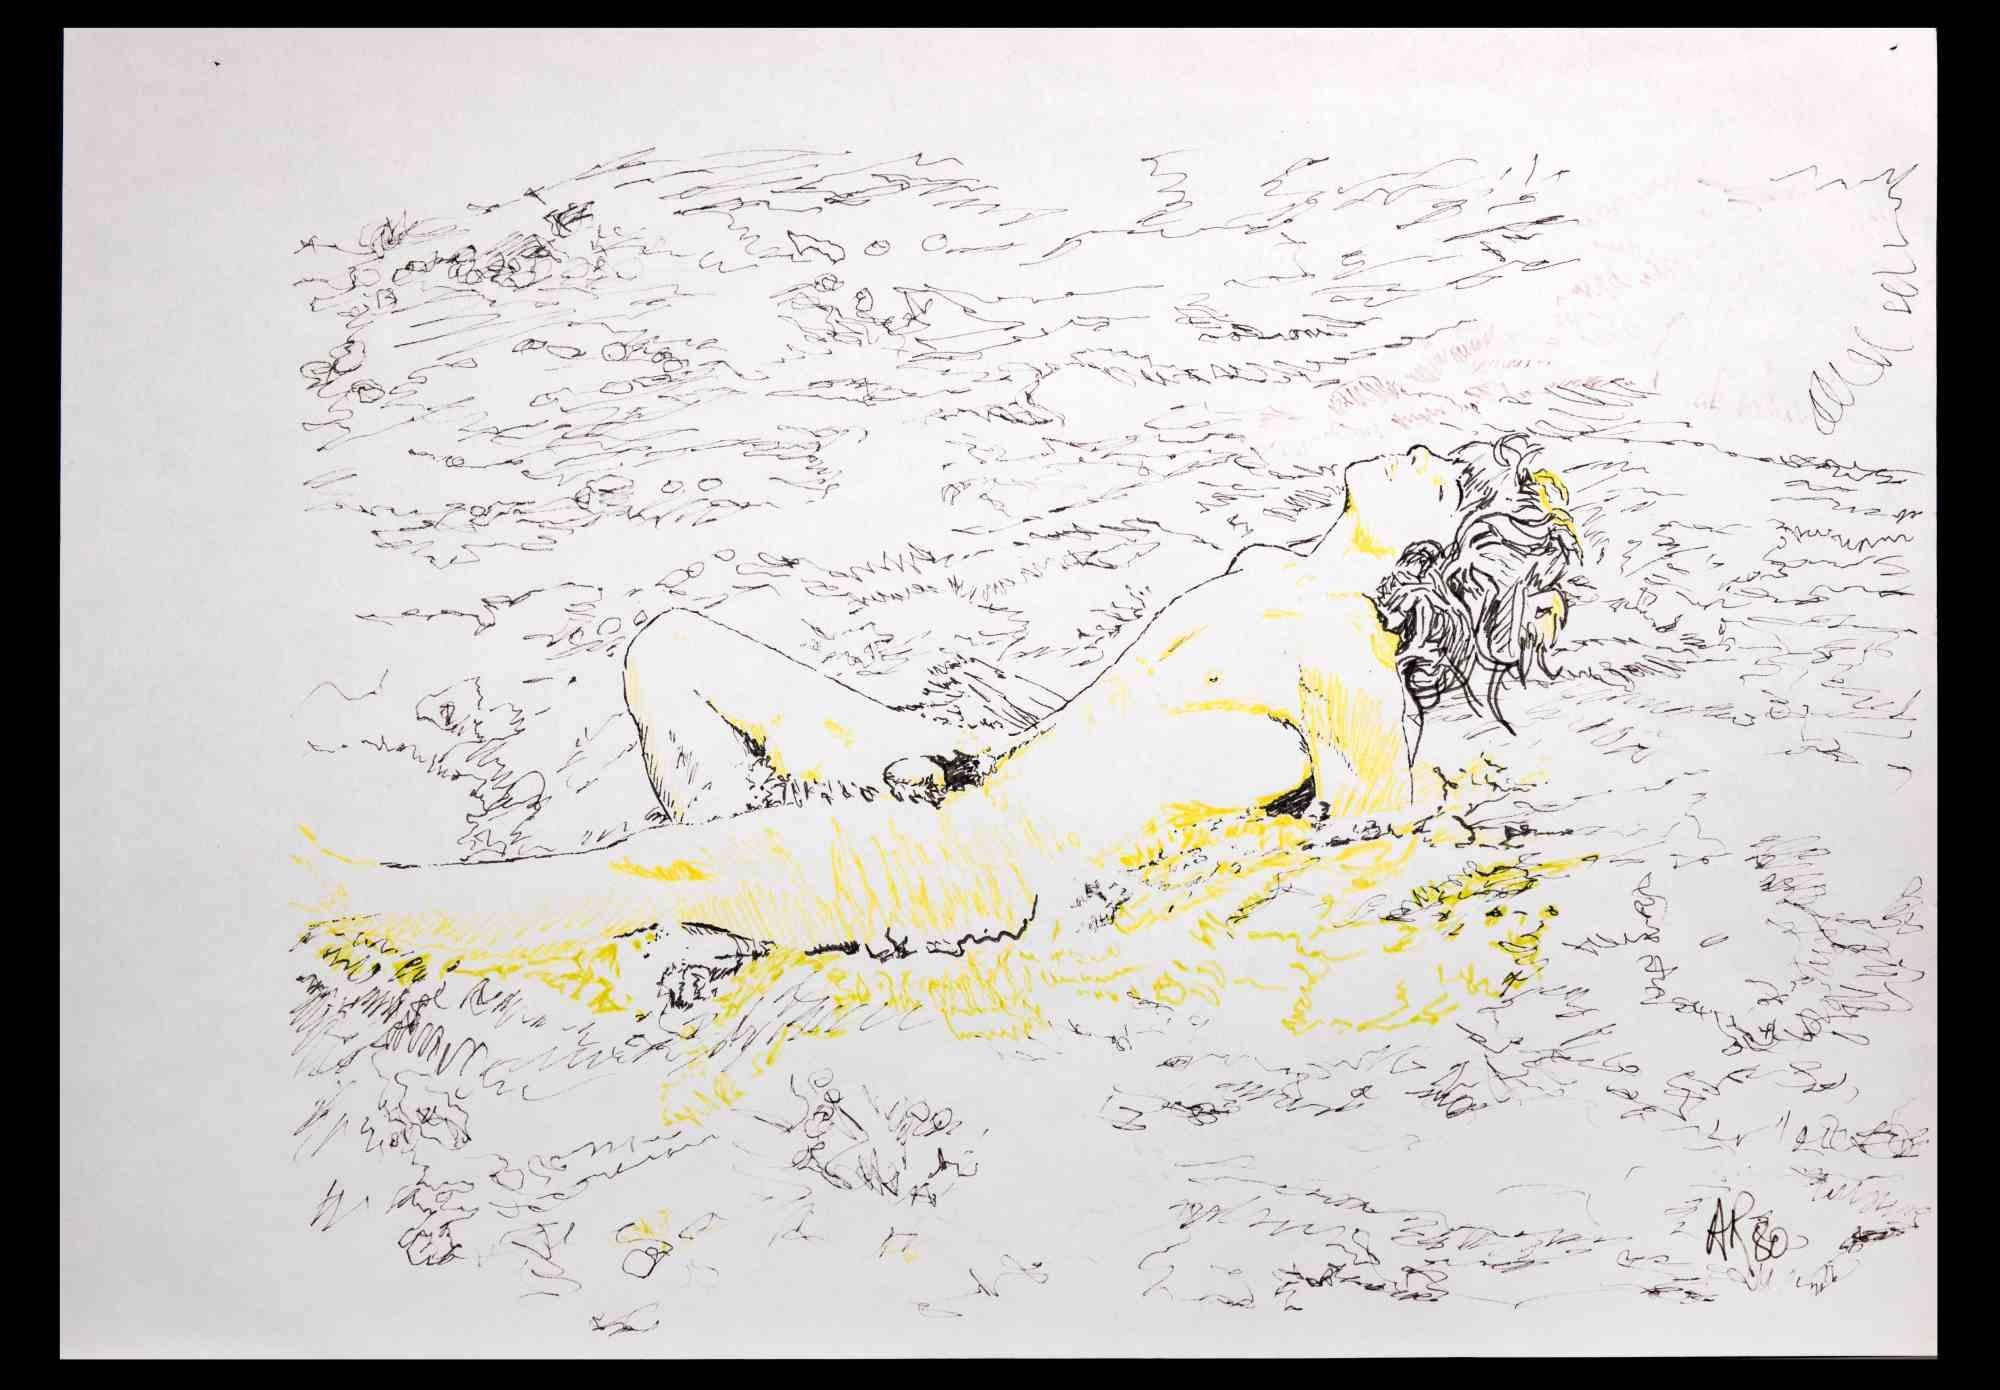 Mann liegend ist eine Originalzeichnung von Anthony Roaland aus dem Jahr 1980. Vom Künstler am rechten unteren Rand handsigniert und datiert. 

Im Vordergrund ist die Figur in einem zarten und frischen Stil dargestellt.

Gute Bedingungen.